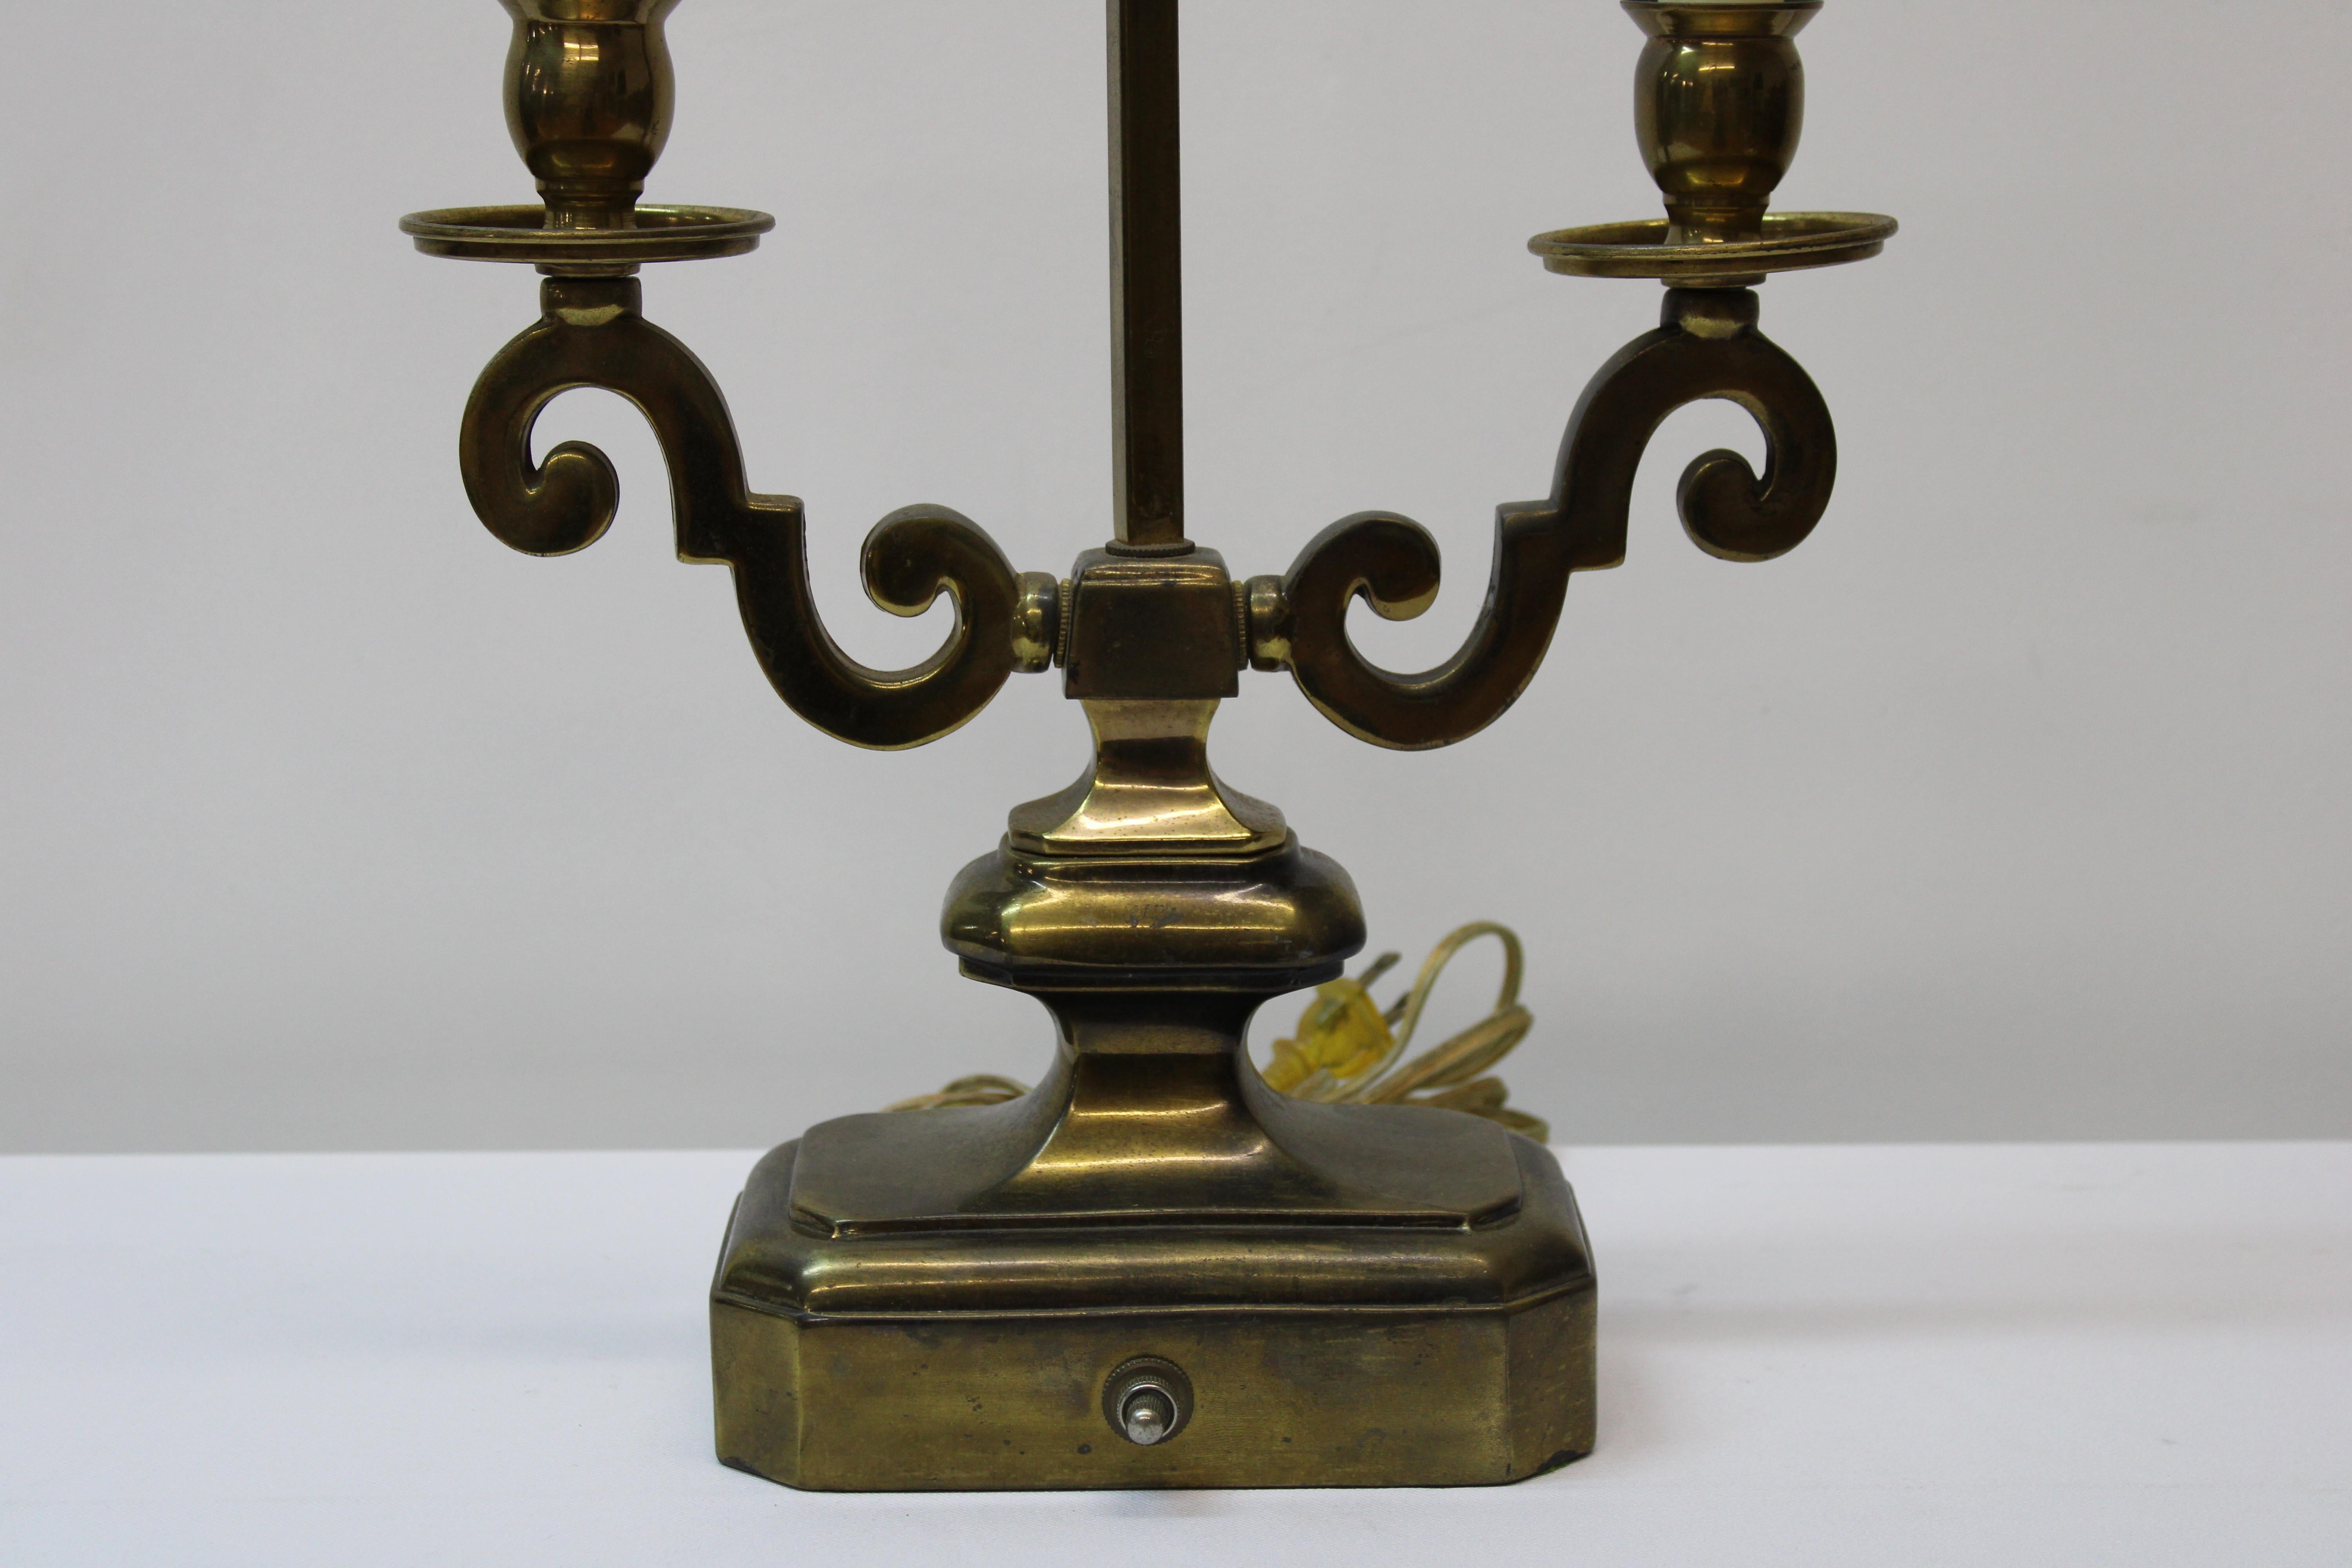 C. 20. Jahrhundert

Messing-Kandelaber im französischen Stil, umgewandelt in Tischlampe.